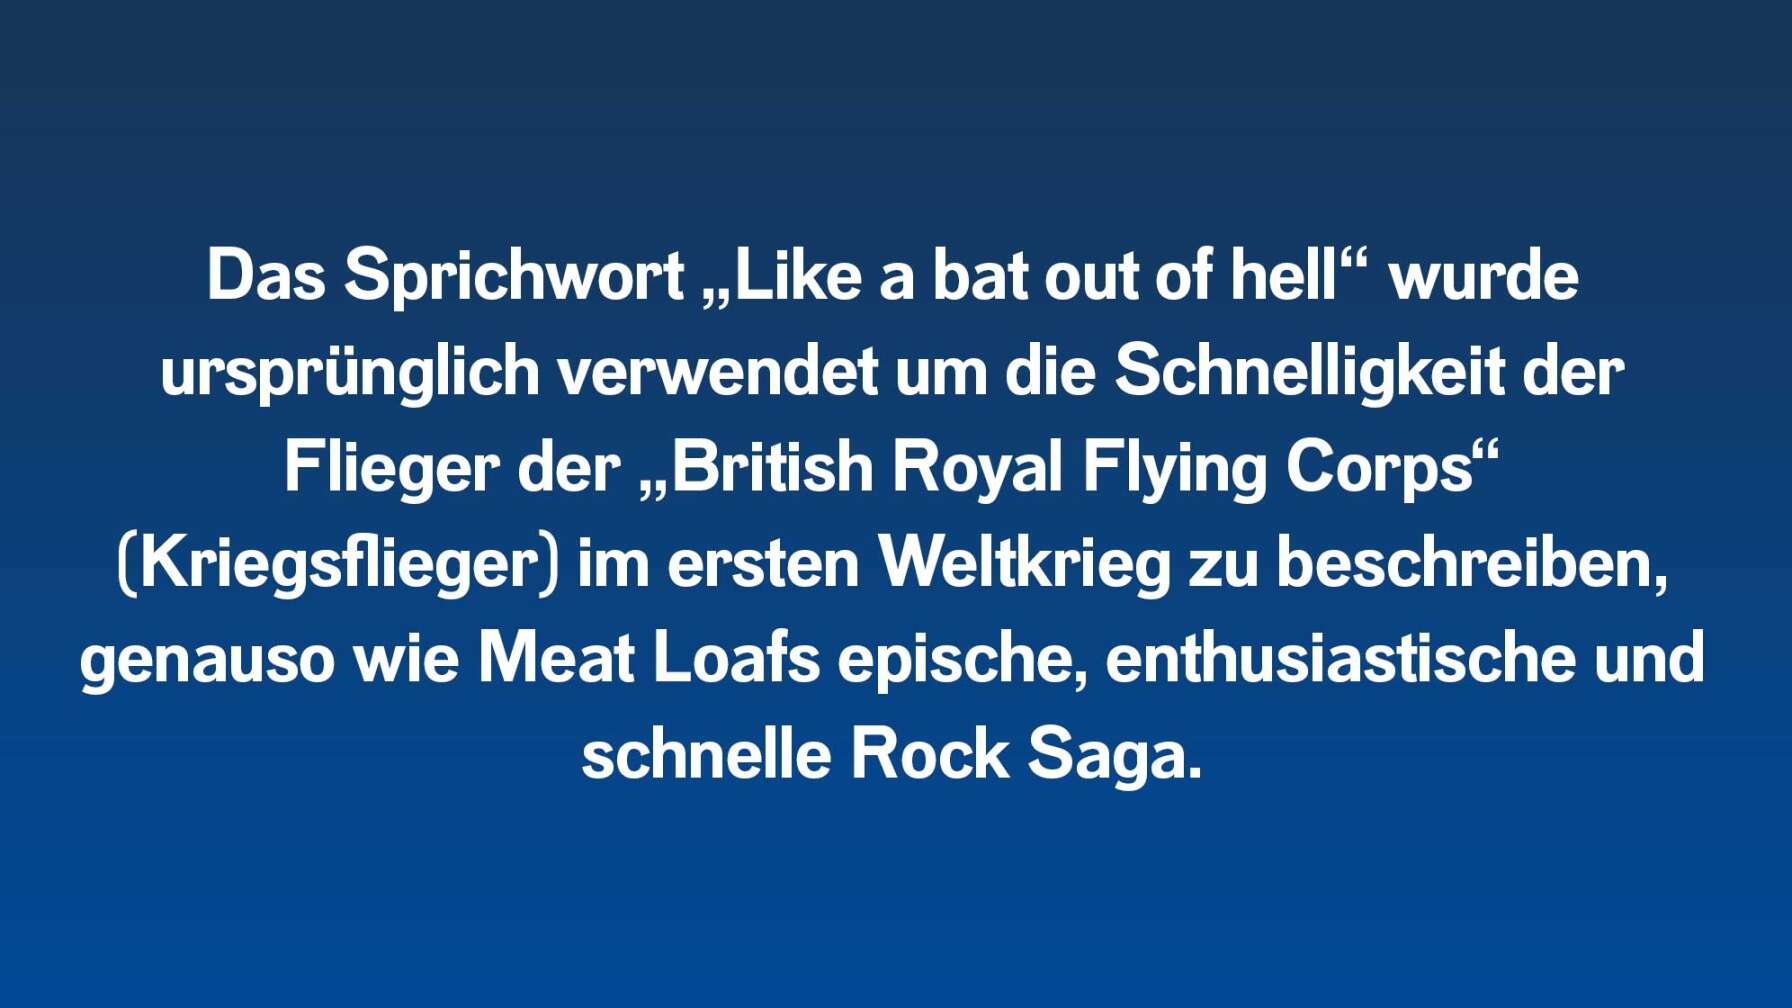 Das Sprichwort „Like a bat out of hell“ wurde ursprünglich verwendet um die Schnelligkeit der Flieger der „British Royal Flying Corps“ (Kriegsflieger) im ersten Weltkrieg zu beschreiben, genauso wie Meat Loafs epische, enthusiastische und schnelle Rock Saga.